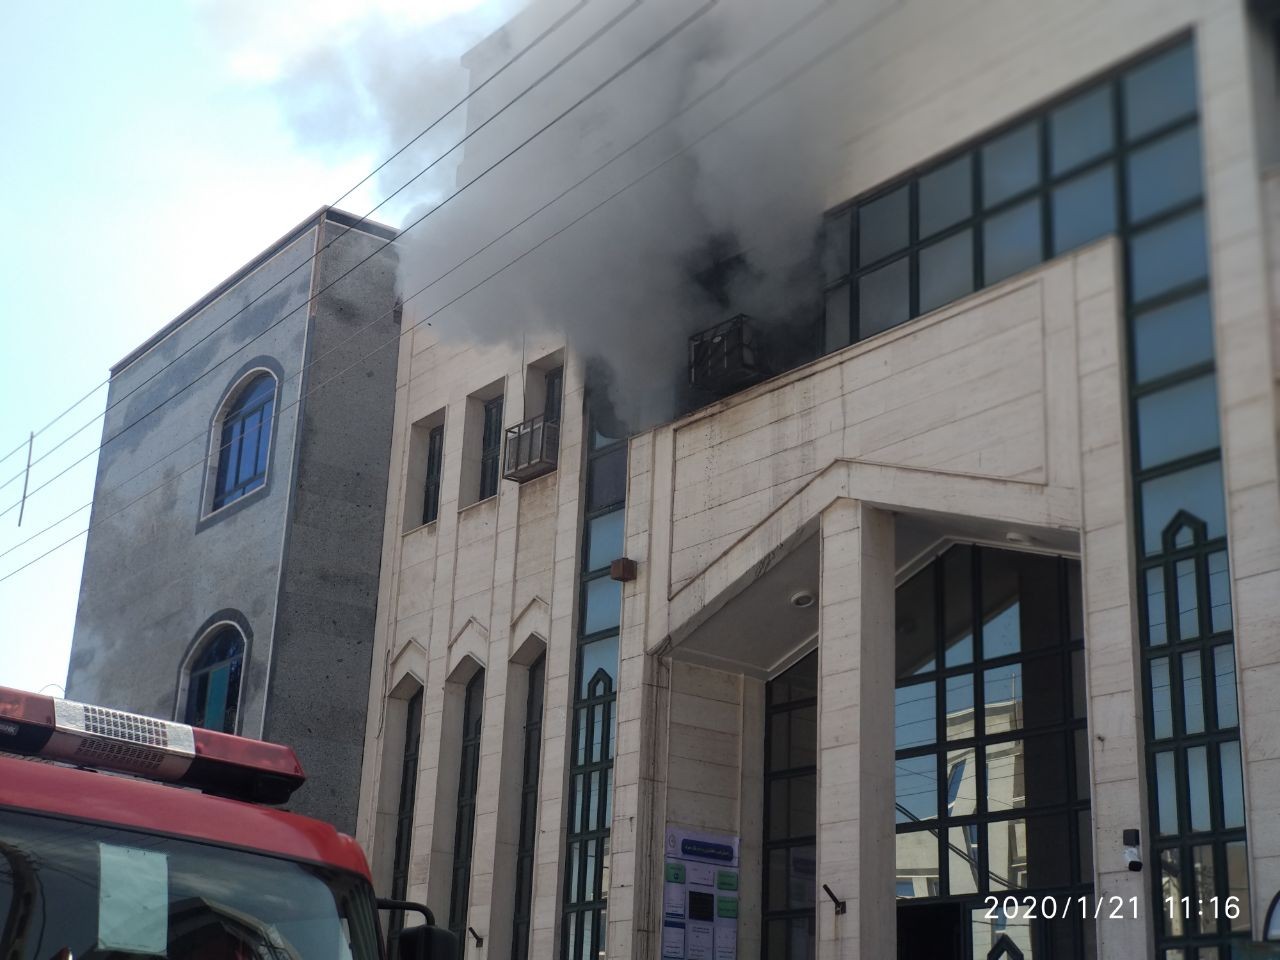 آتش سوزی در مهمانسرای بانک ملی زاهدان / حادثه خسارت جانی نداشت